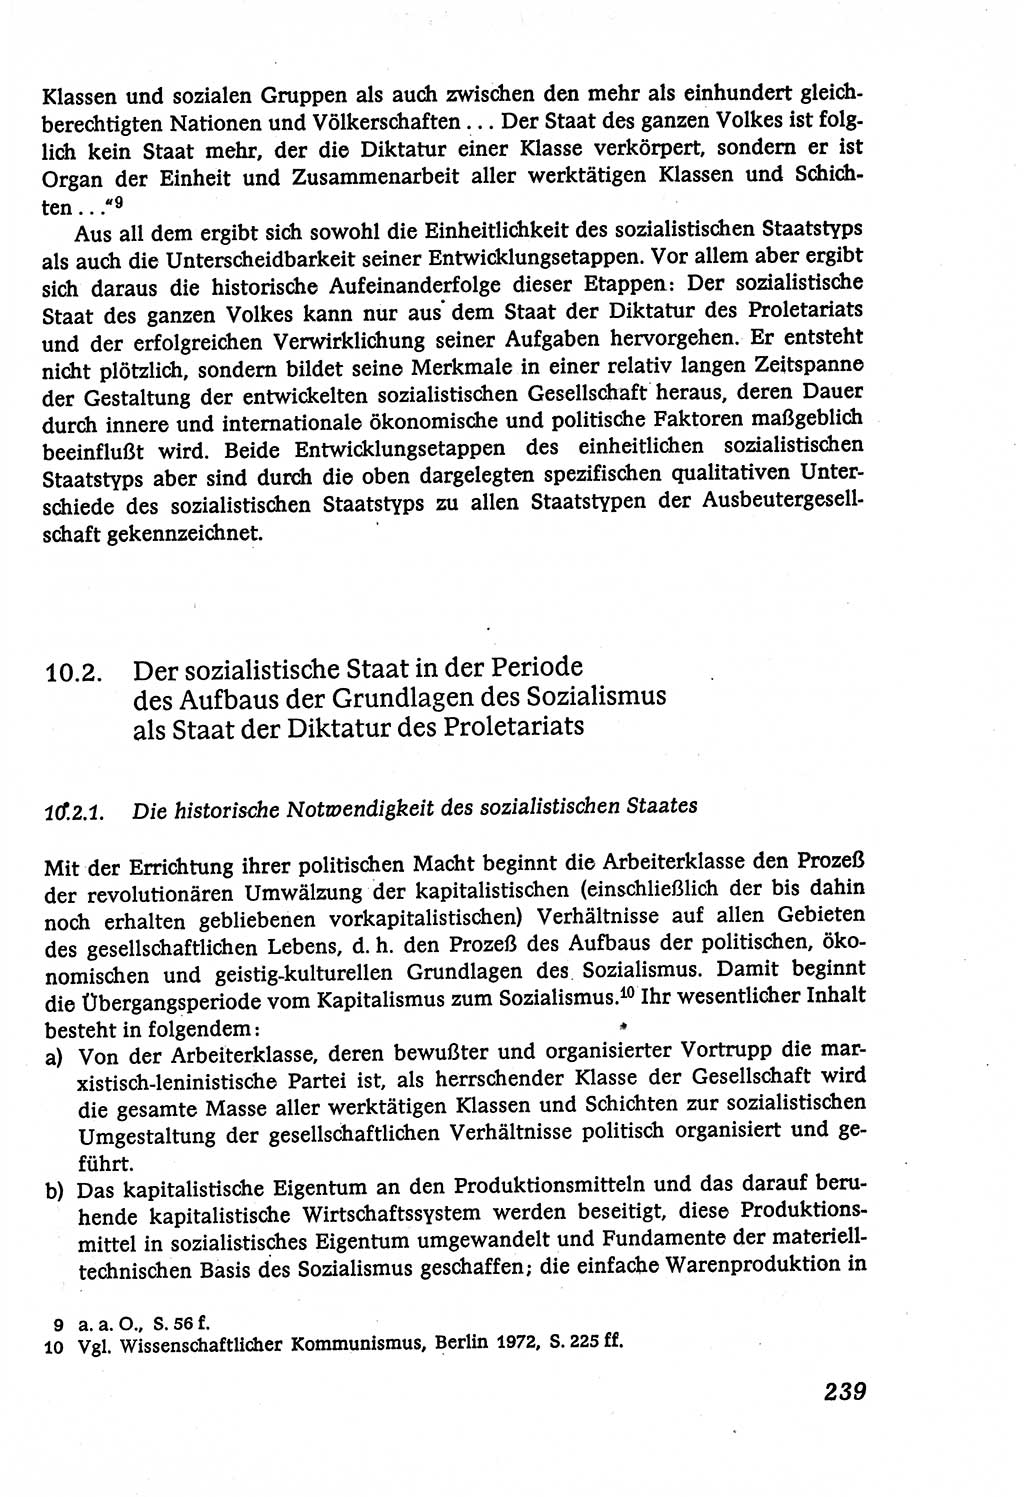 Marxistisch-leninistische (ML) Staats- und Rechtstheorie [Deutsche Demokratische Republik (DDR)], Lehrbuch 1980, Seite 239 (ML St.-R.-Th. DDR Lb. 1980, S. 239)